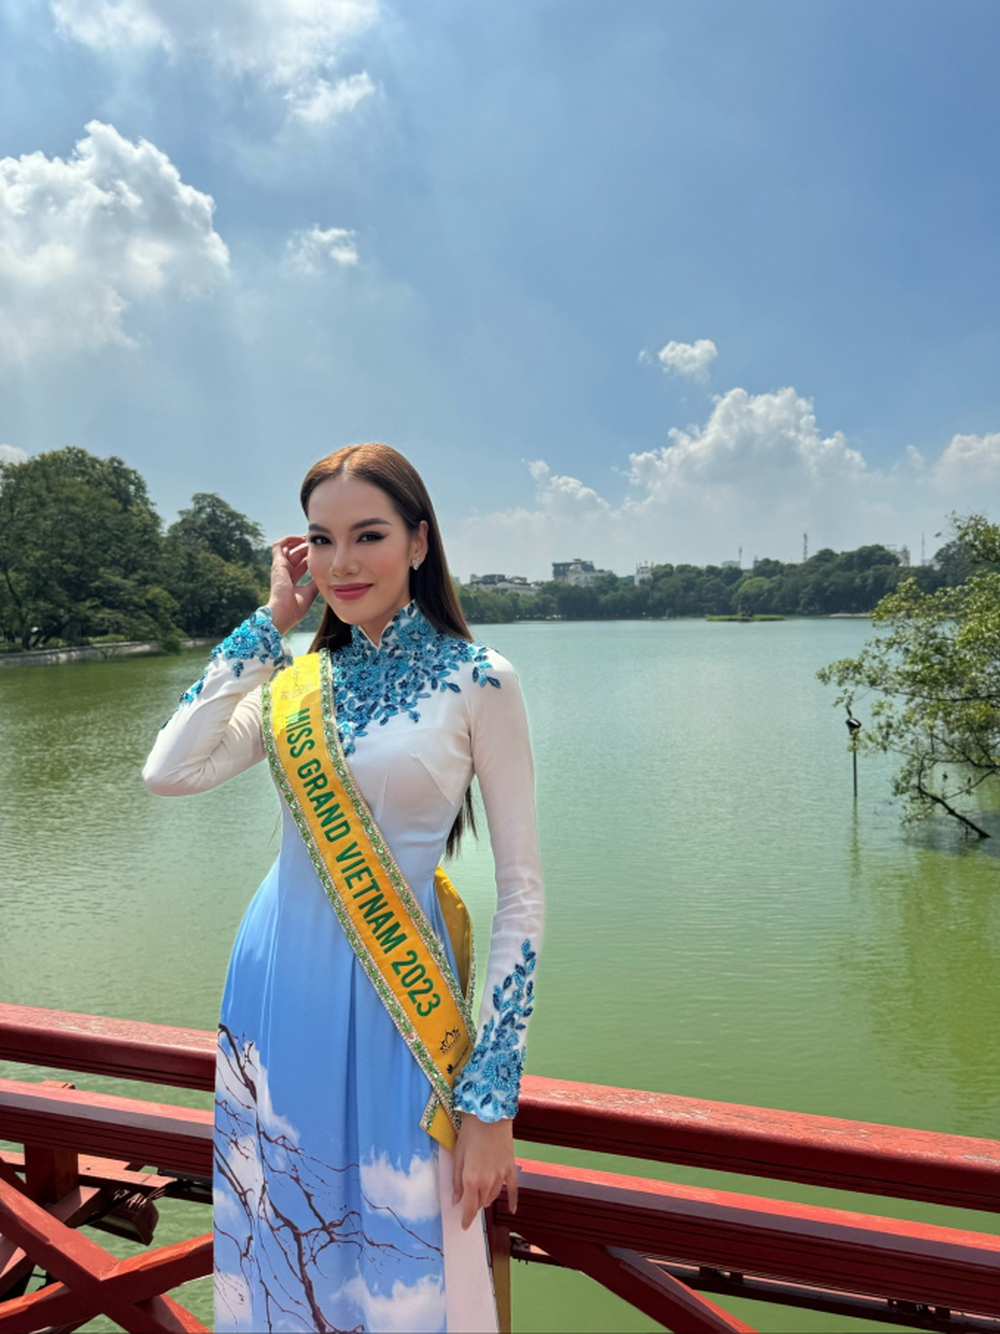 Phỏng vấn nóng Lê Hoàng Phương trước đêm Chung kết Miss Grand International 2023: Mục tiêu gần nhất của tôi là Top 5 - Ảnh 2.